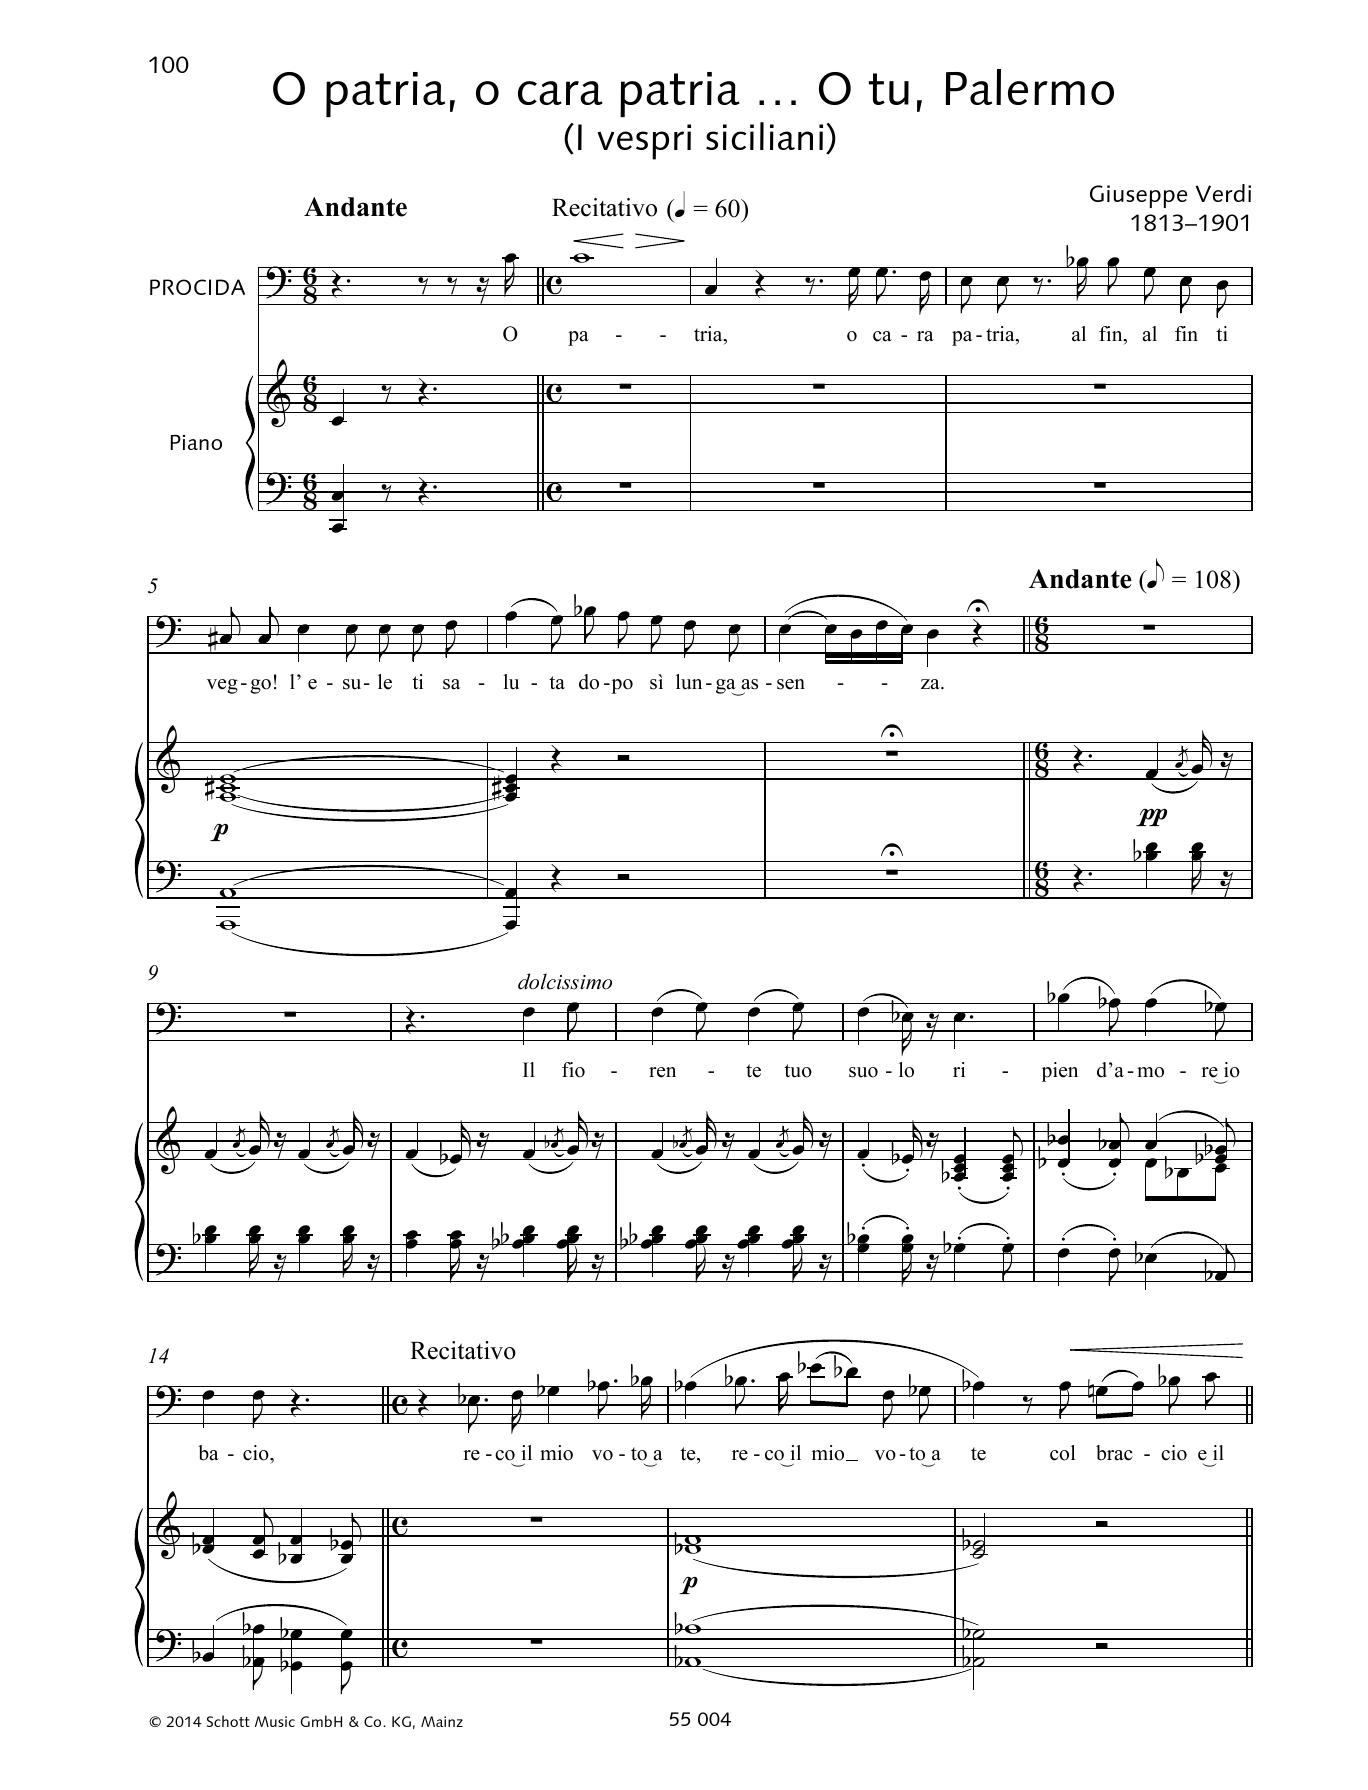 Giuseppe Verdi O patria, o cara patria... O tu, Palermo sheet music notes and chords arranged for Piano & Vocal